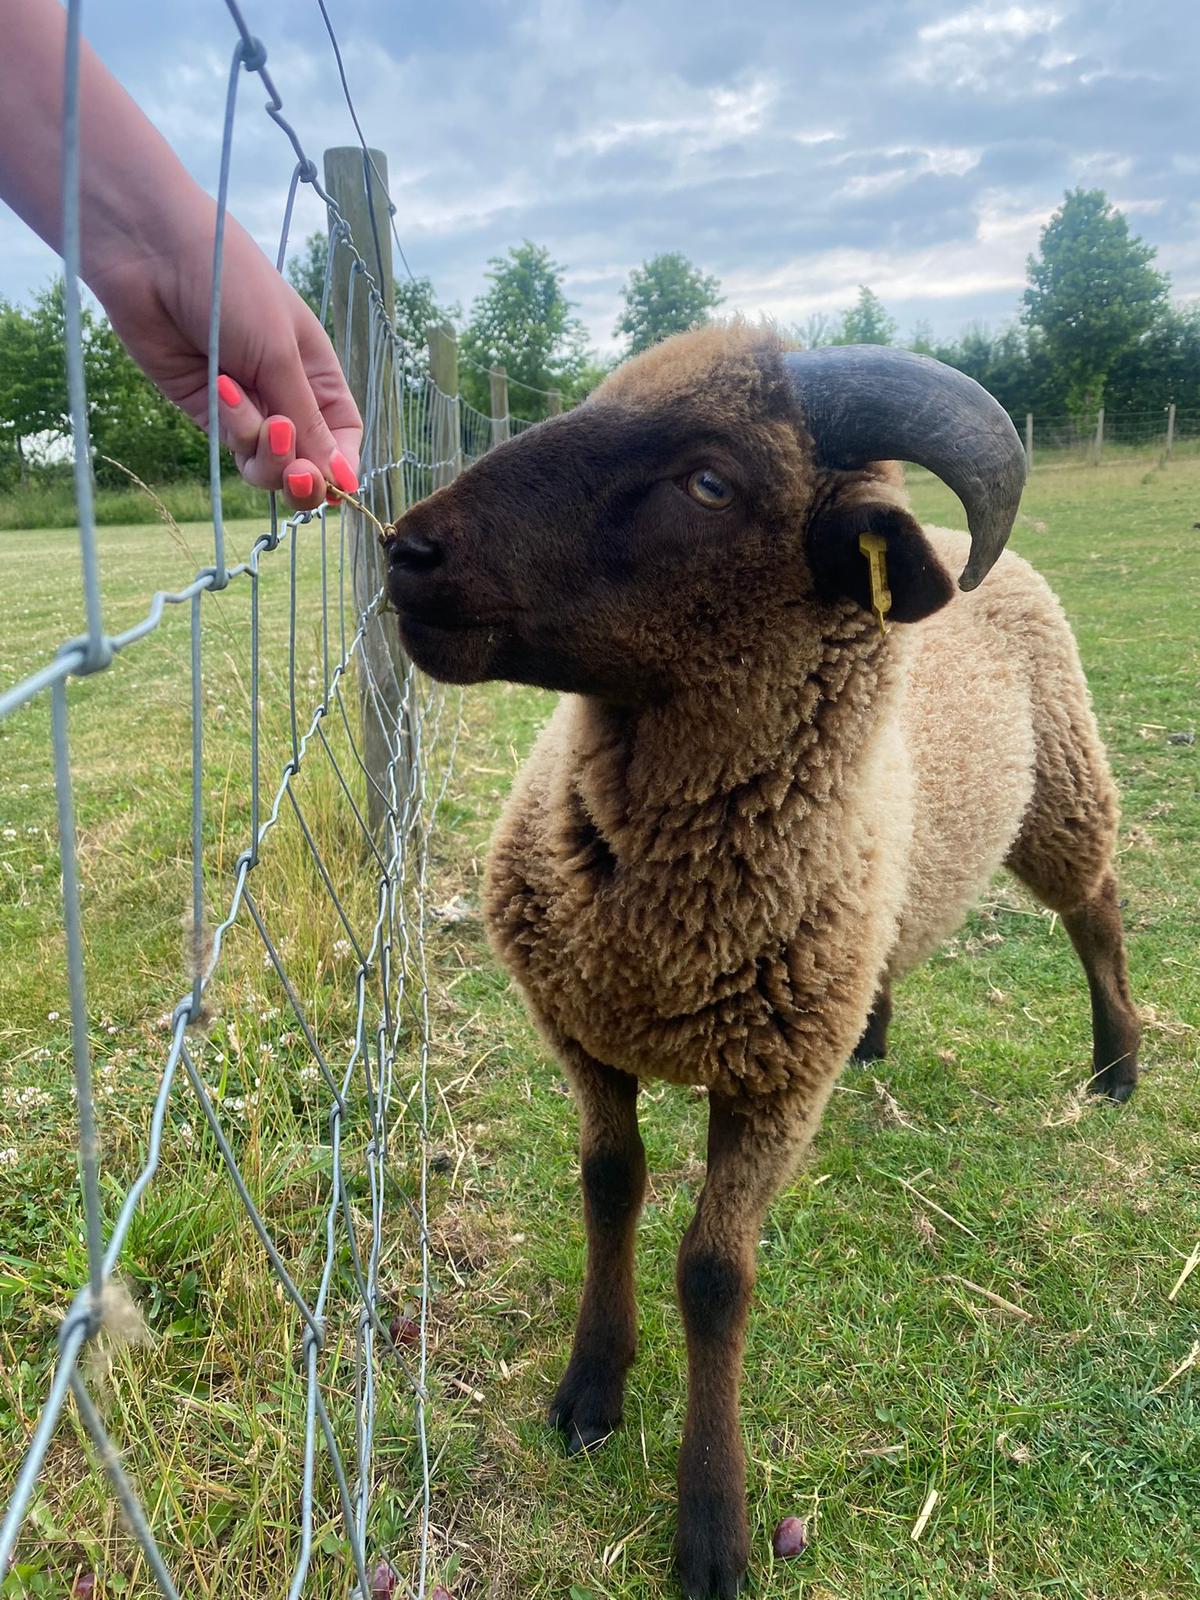 lamb being hand fed at South Farm farm wedding venue